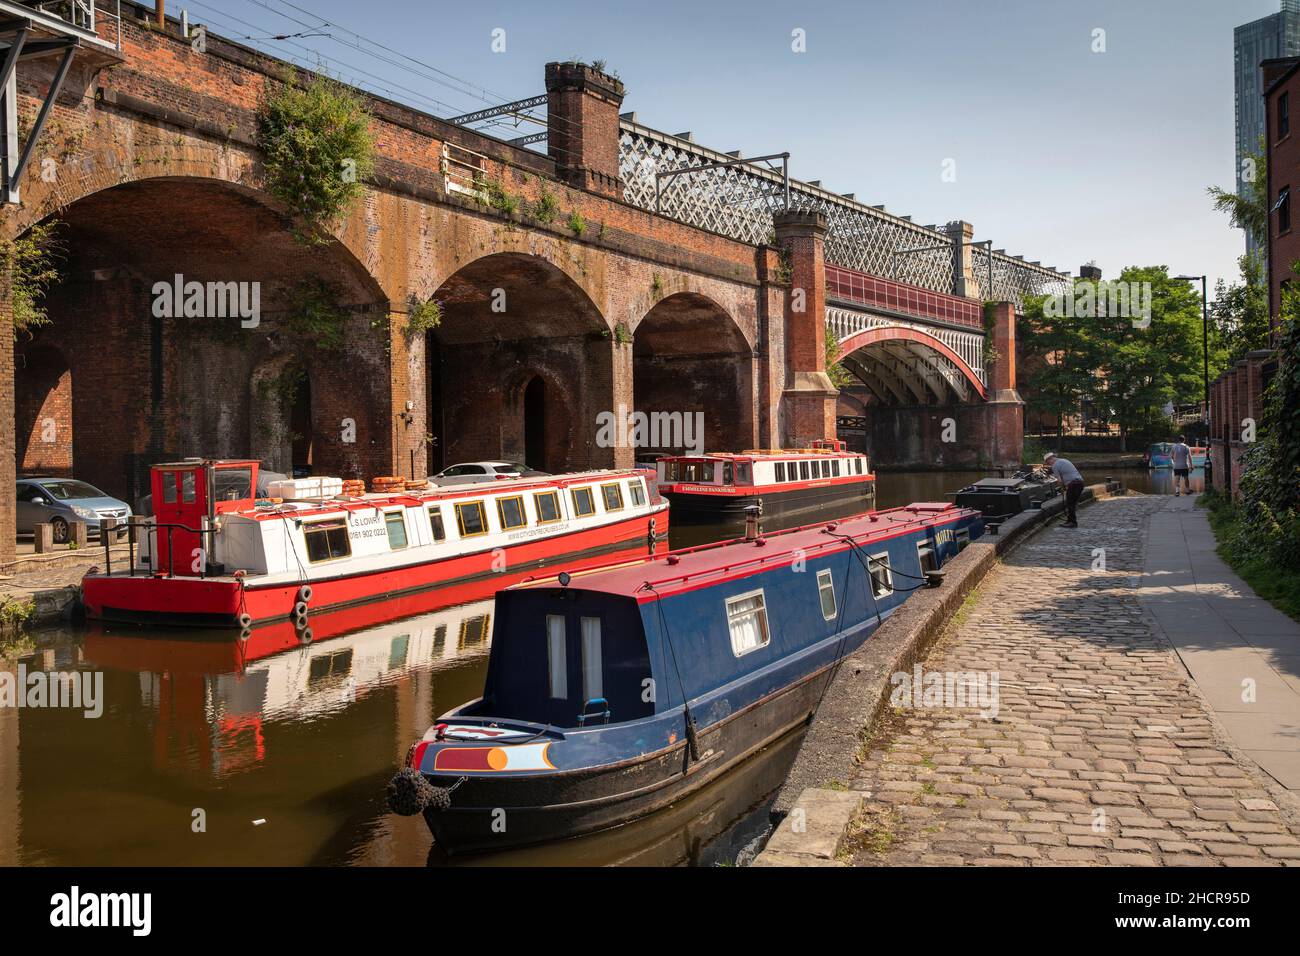 Regno Unito, Inghilterra, Manchester, Castlefield, barche a crociera ormeggiate sul canale Bridgewater sotto il viadotto ferroviario Metrolink Foto Stock